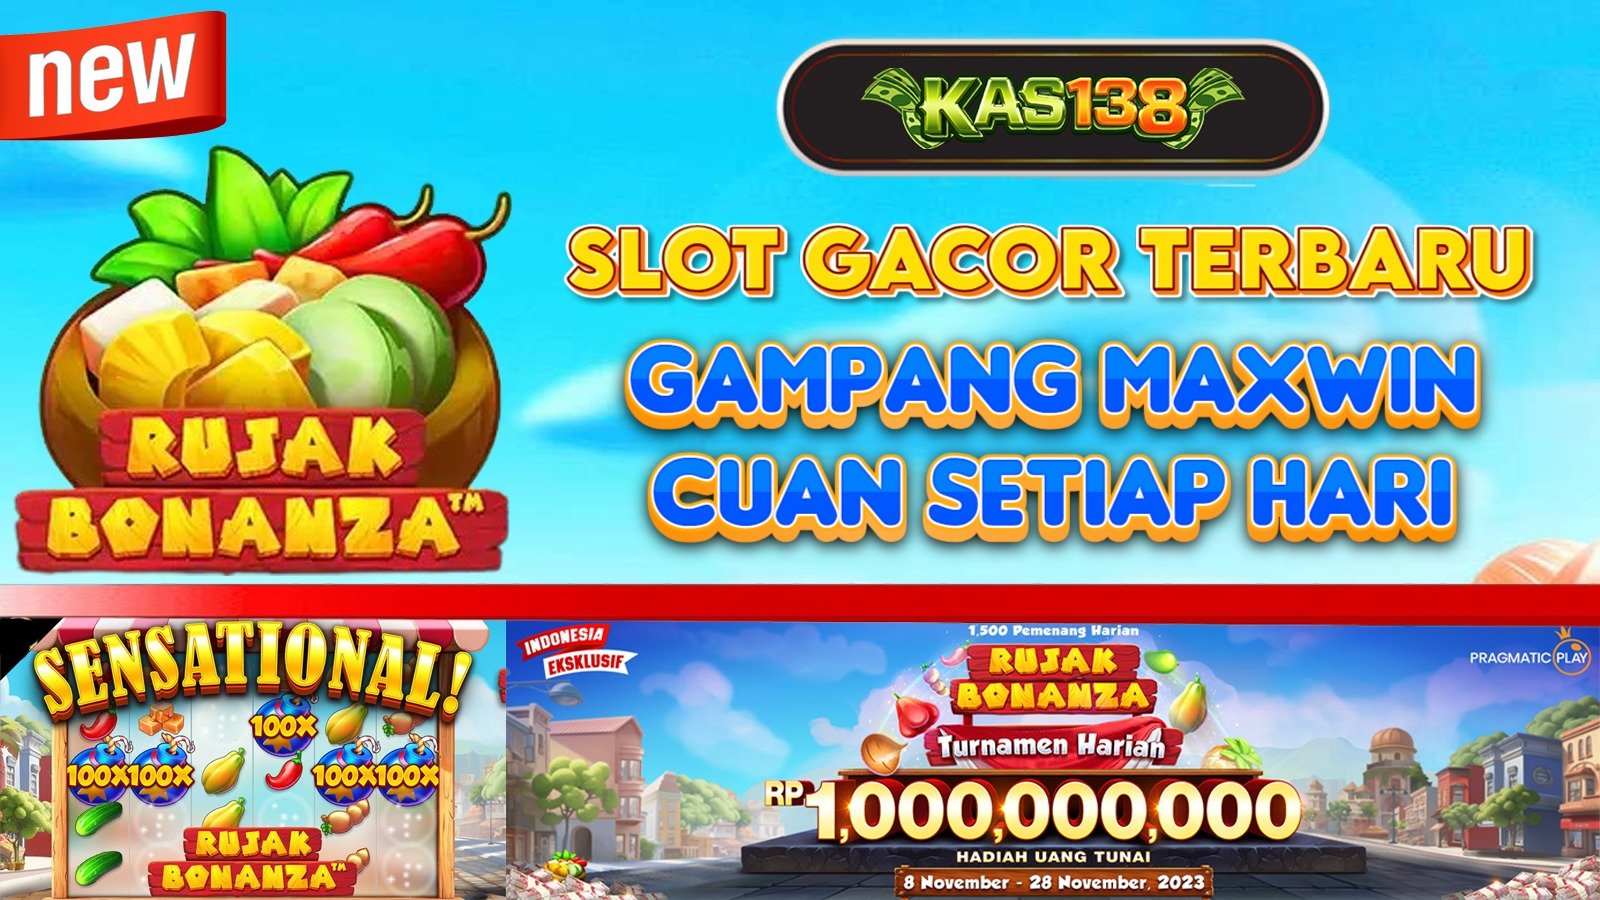 Kas138 Situs Judi Slot Online Gampang Menang